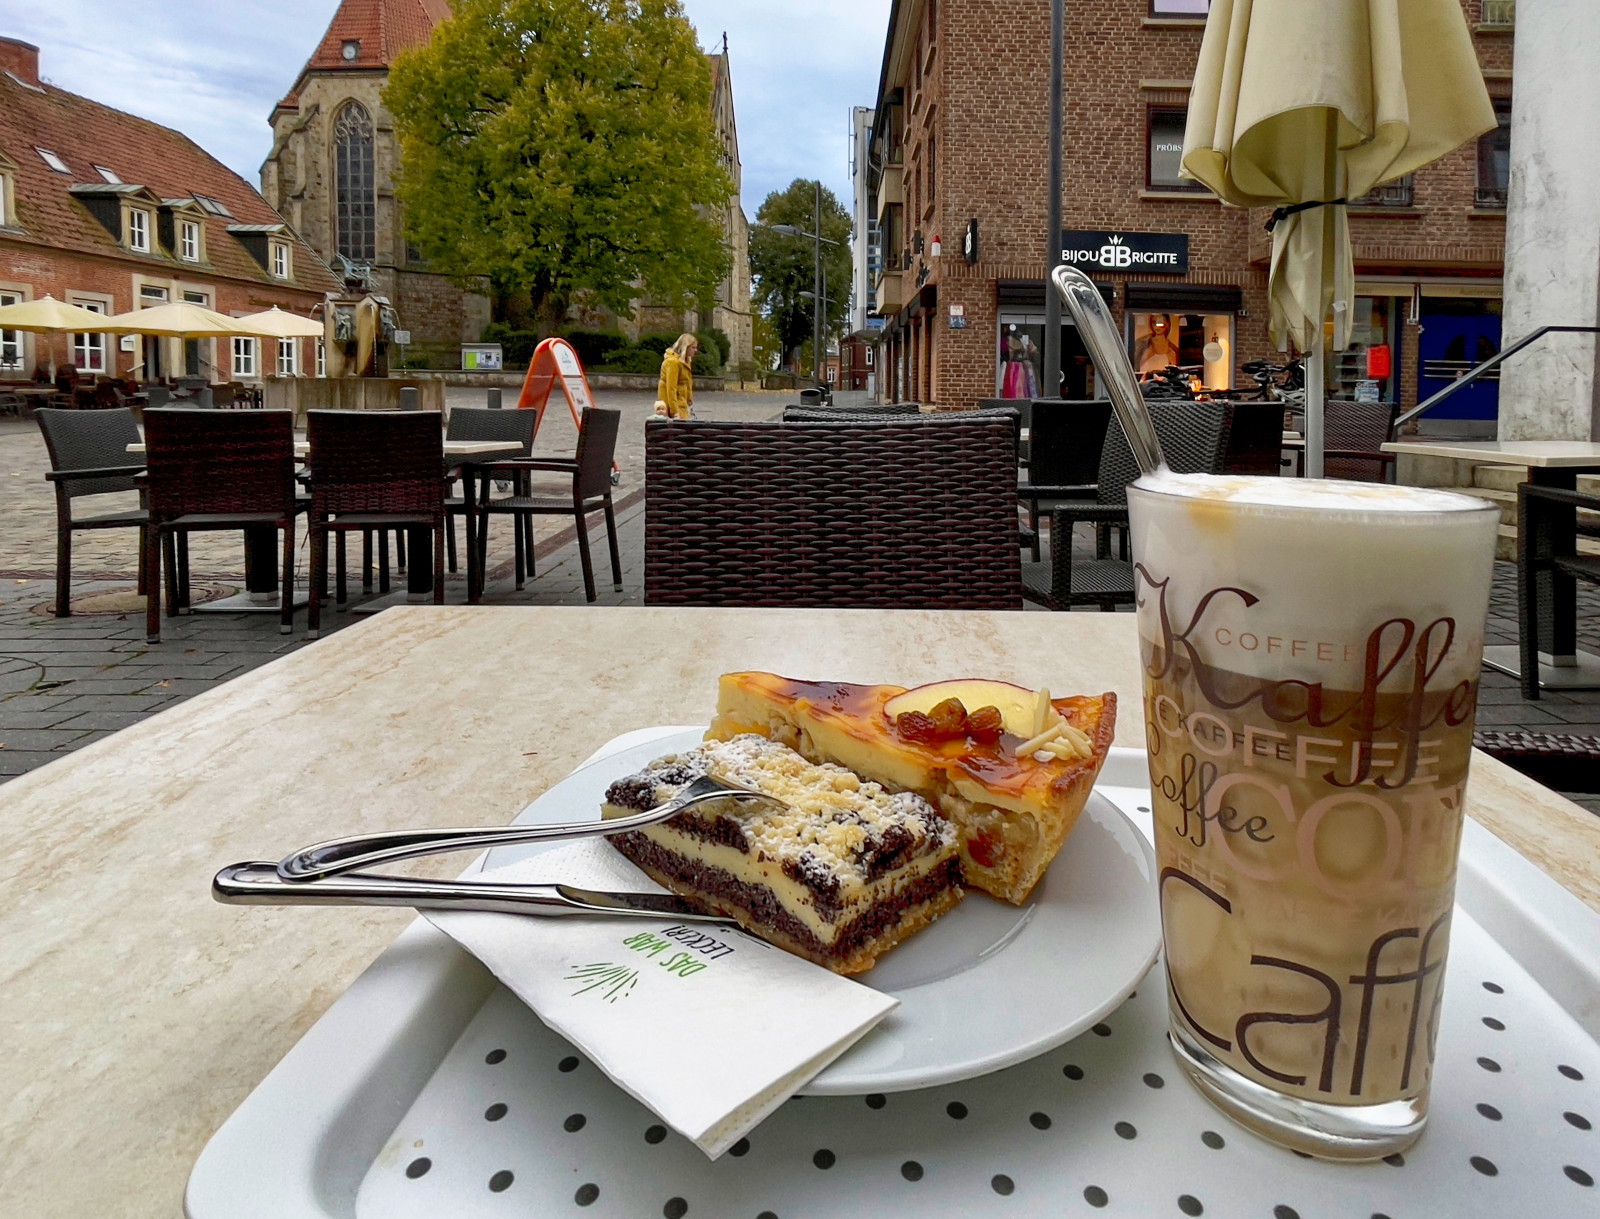 Ein Glas MichKaffee und zwei Stück Kuchen, Mohn und Apfel, auf einem Cafétisch auf einem weitläufigen städtischen Platz.